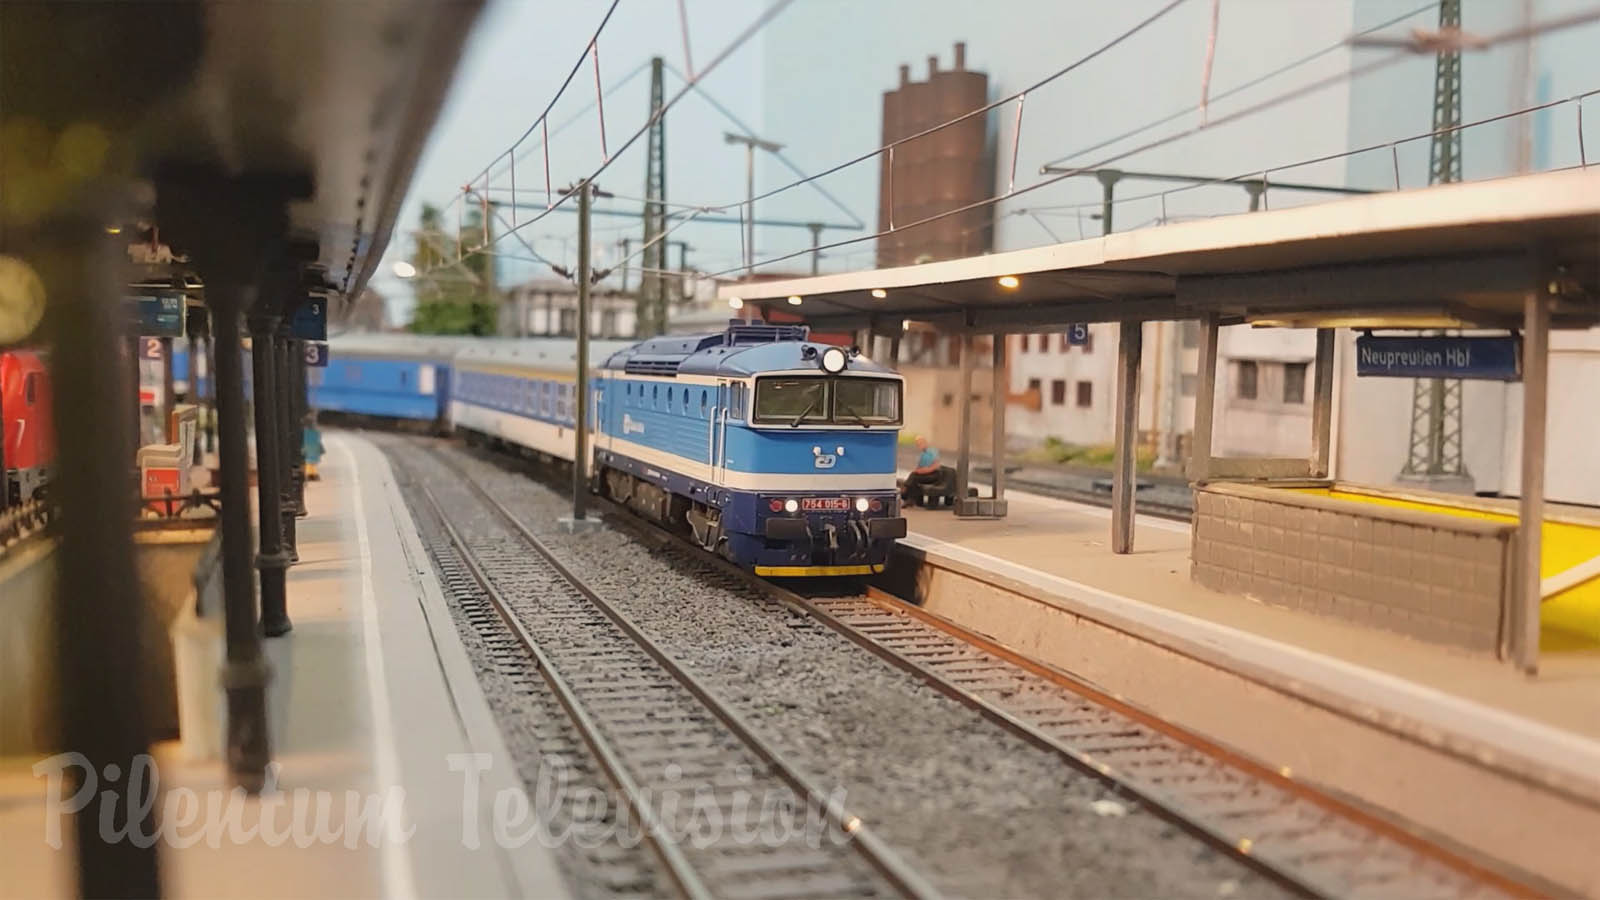 Modeltreinen en locomotieven in schaal HO van de Tsjechische Republiek